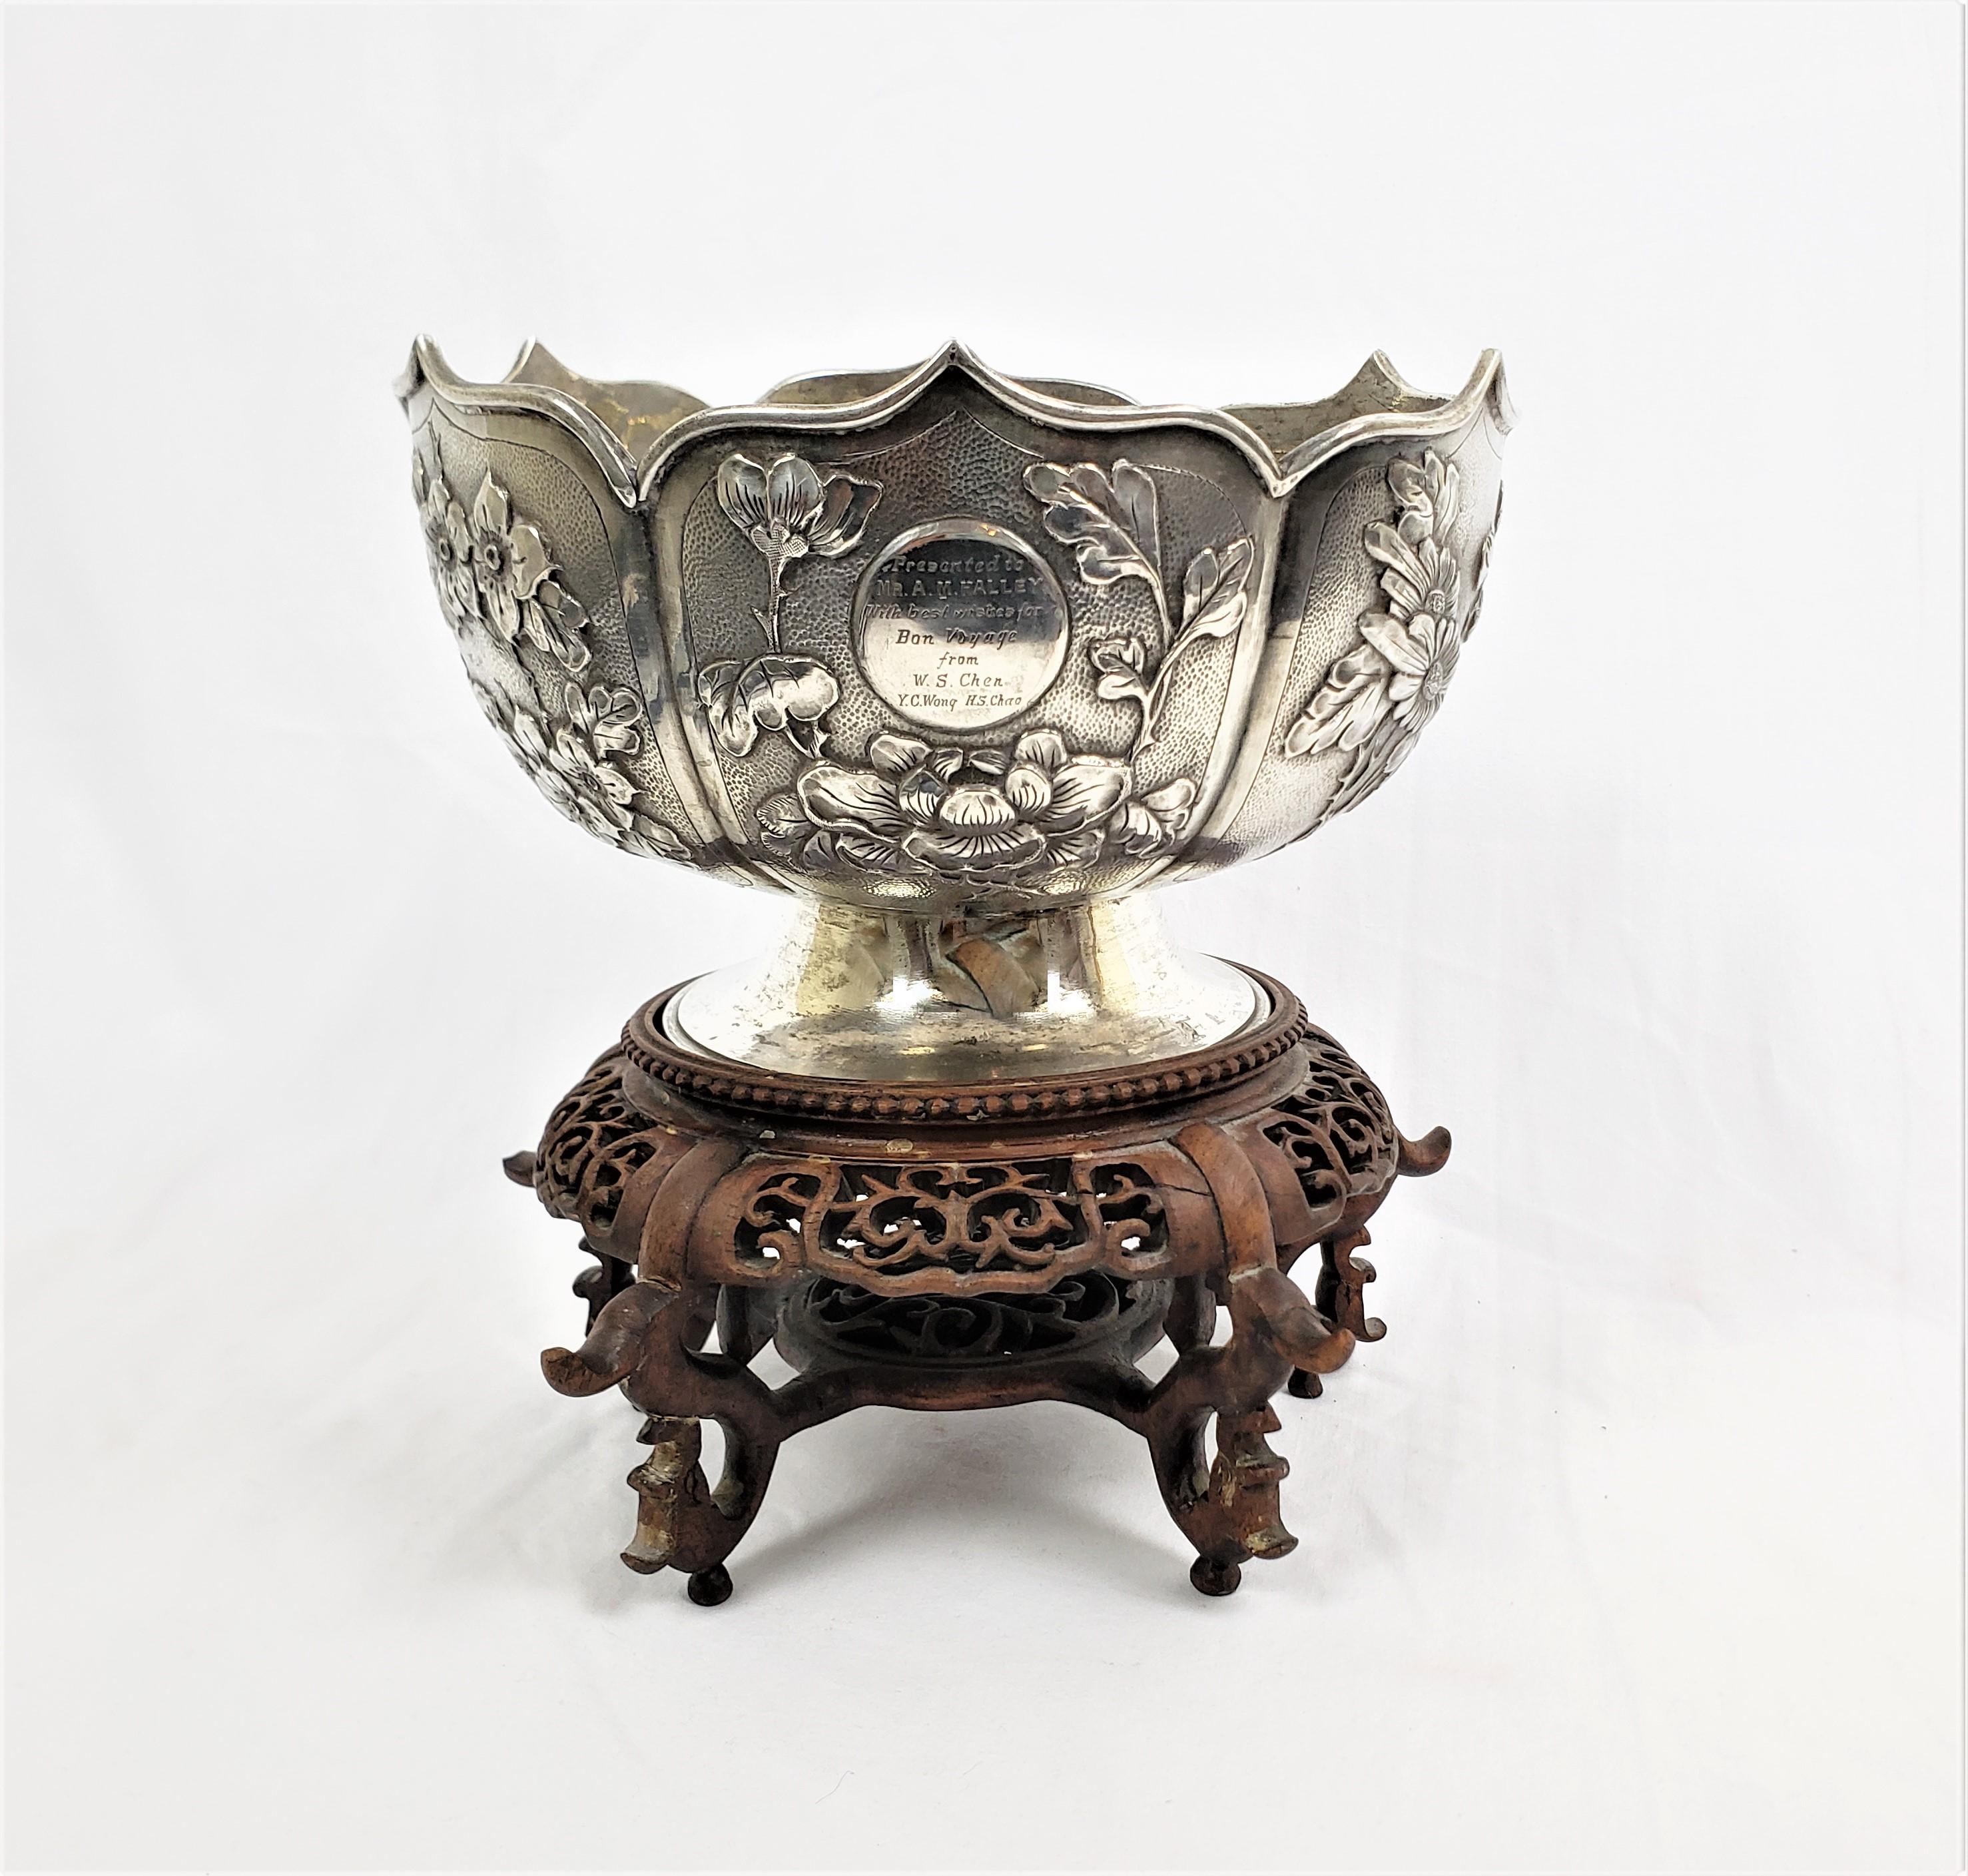 Ce bol en argent a été fabriqué par Zee Sung en Chine vers 1910 dans le style d'exportation chinois de l'époque. Le bol est en argent avec six panneaux stylisés en forme de pétales, ornés d'une décoration ciselée représentant des oiseaux, des fleurs